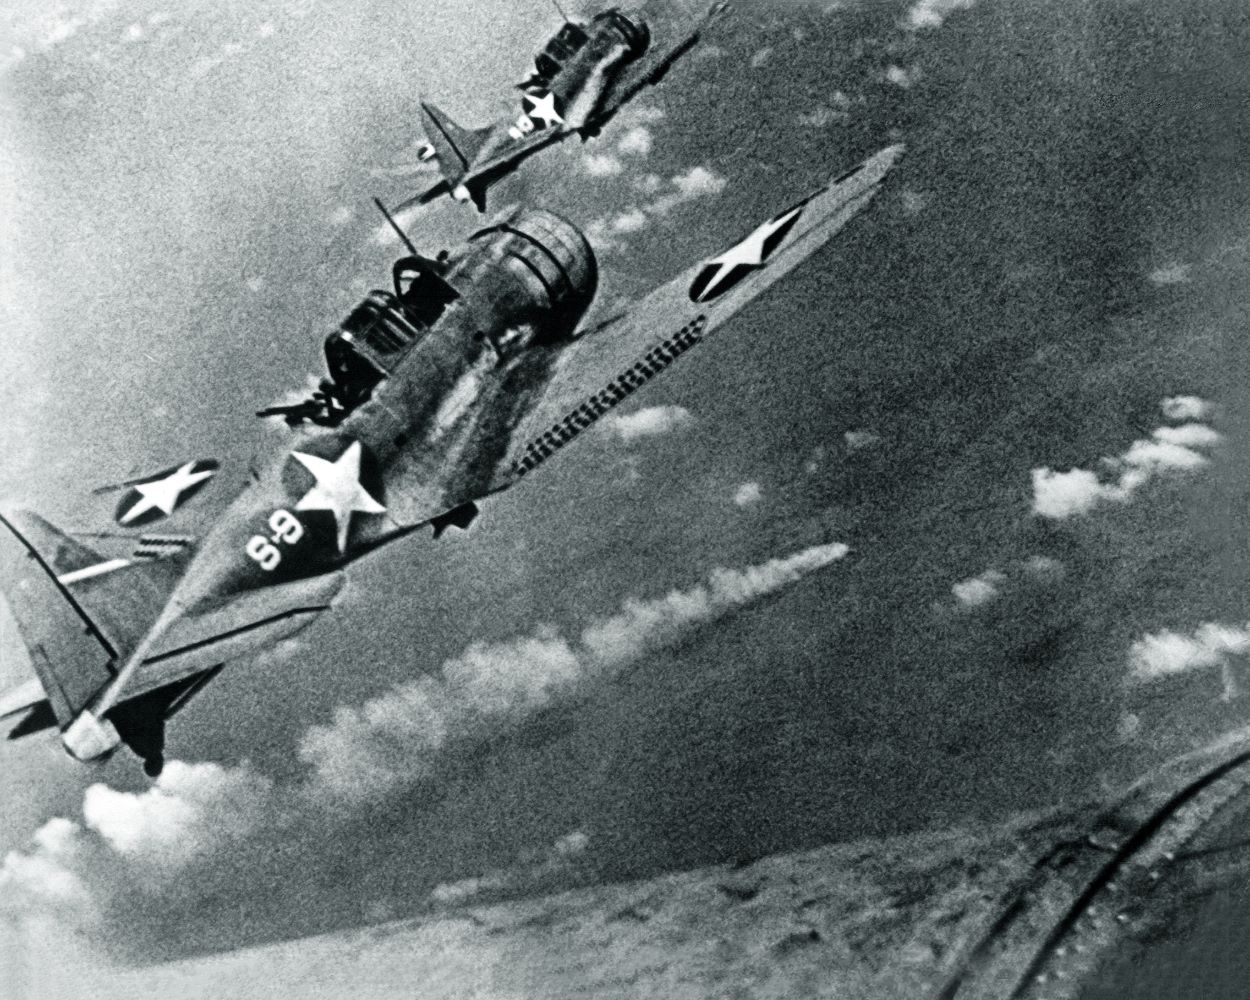 SBD-3-Dauntless-bombers-of-VS-8-over-the-burning-Japanese-cruiser-Mikuma-on-6-June-1942.jpg